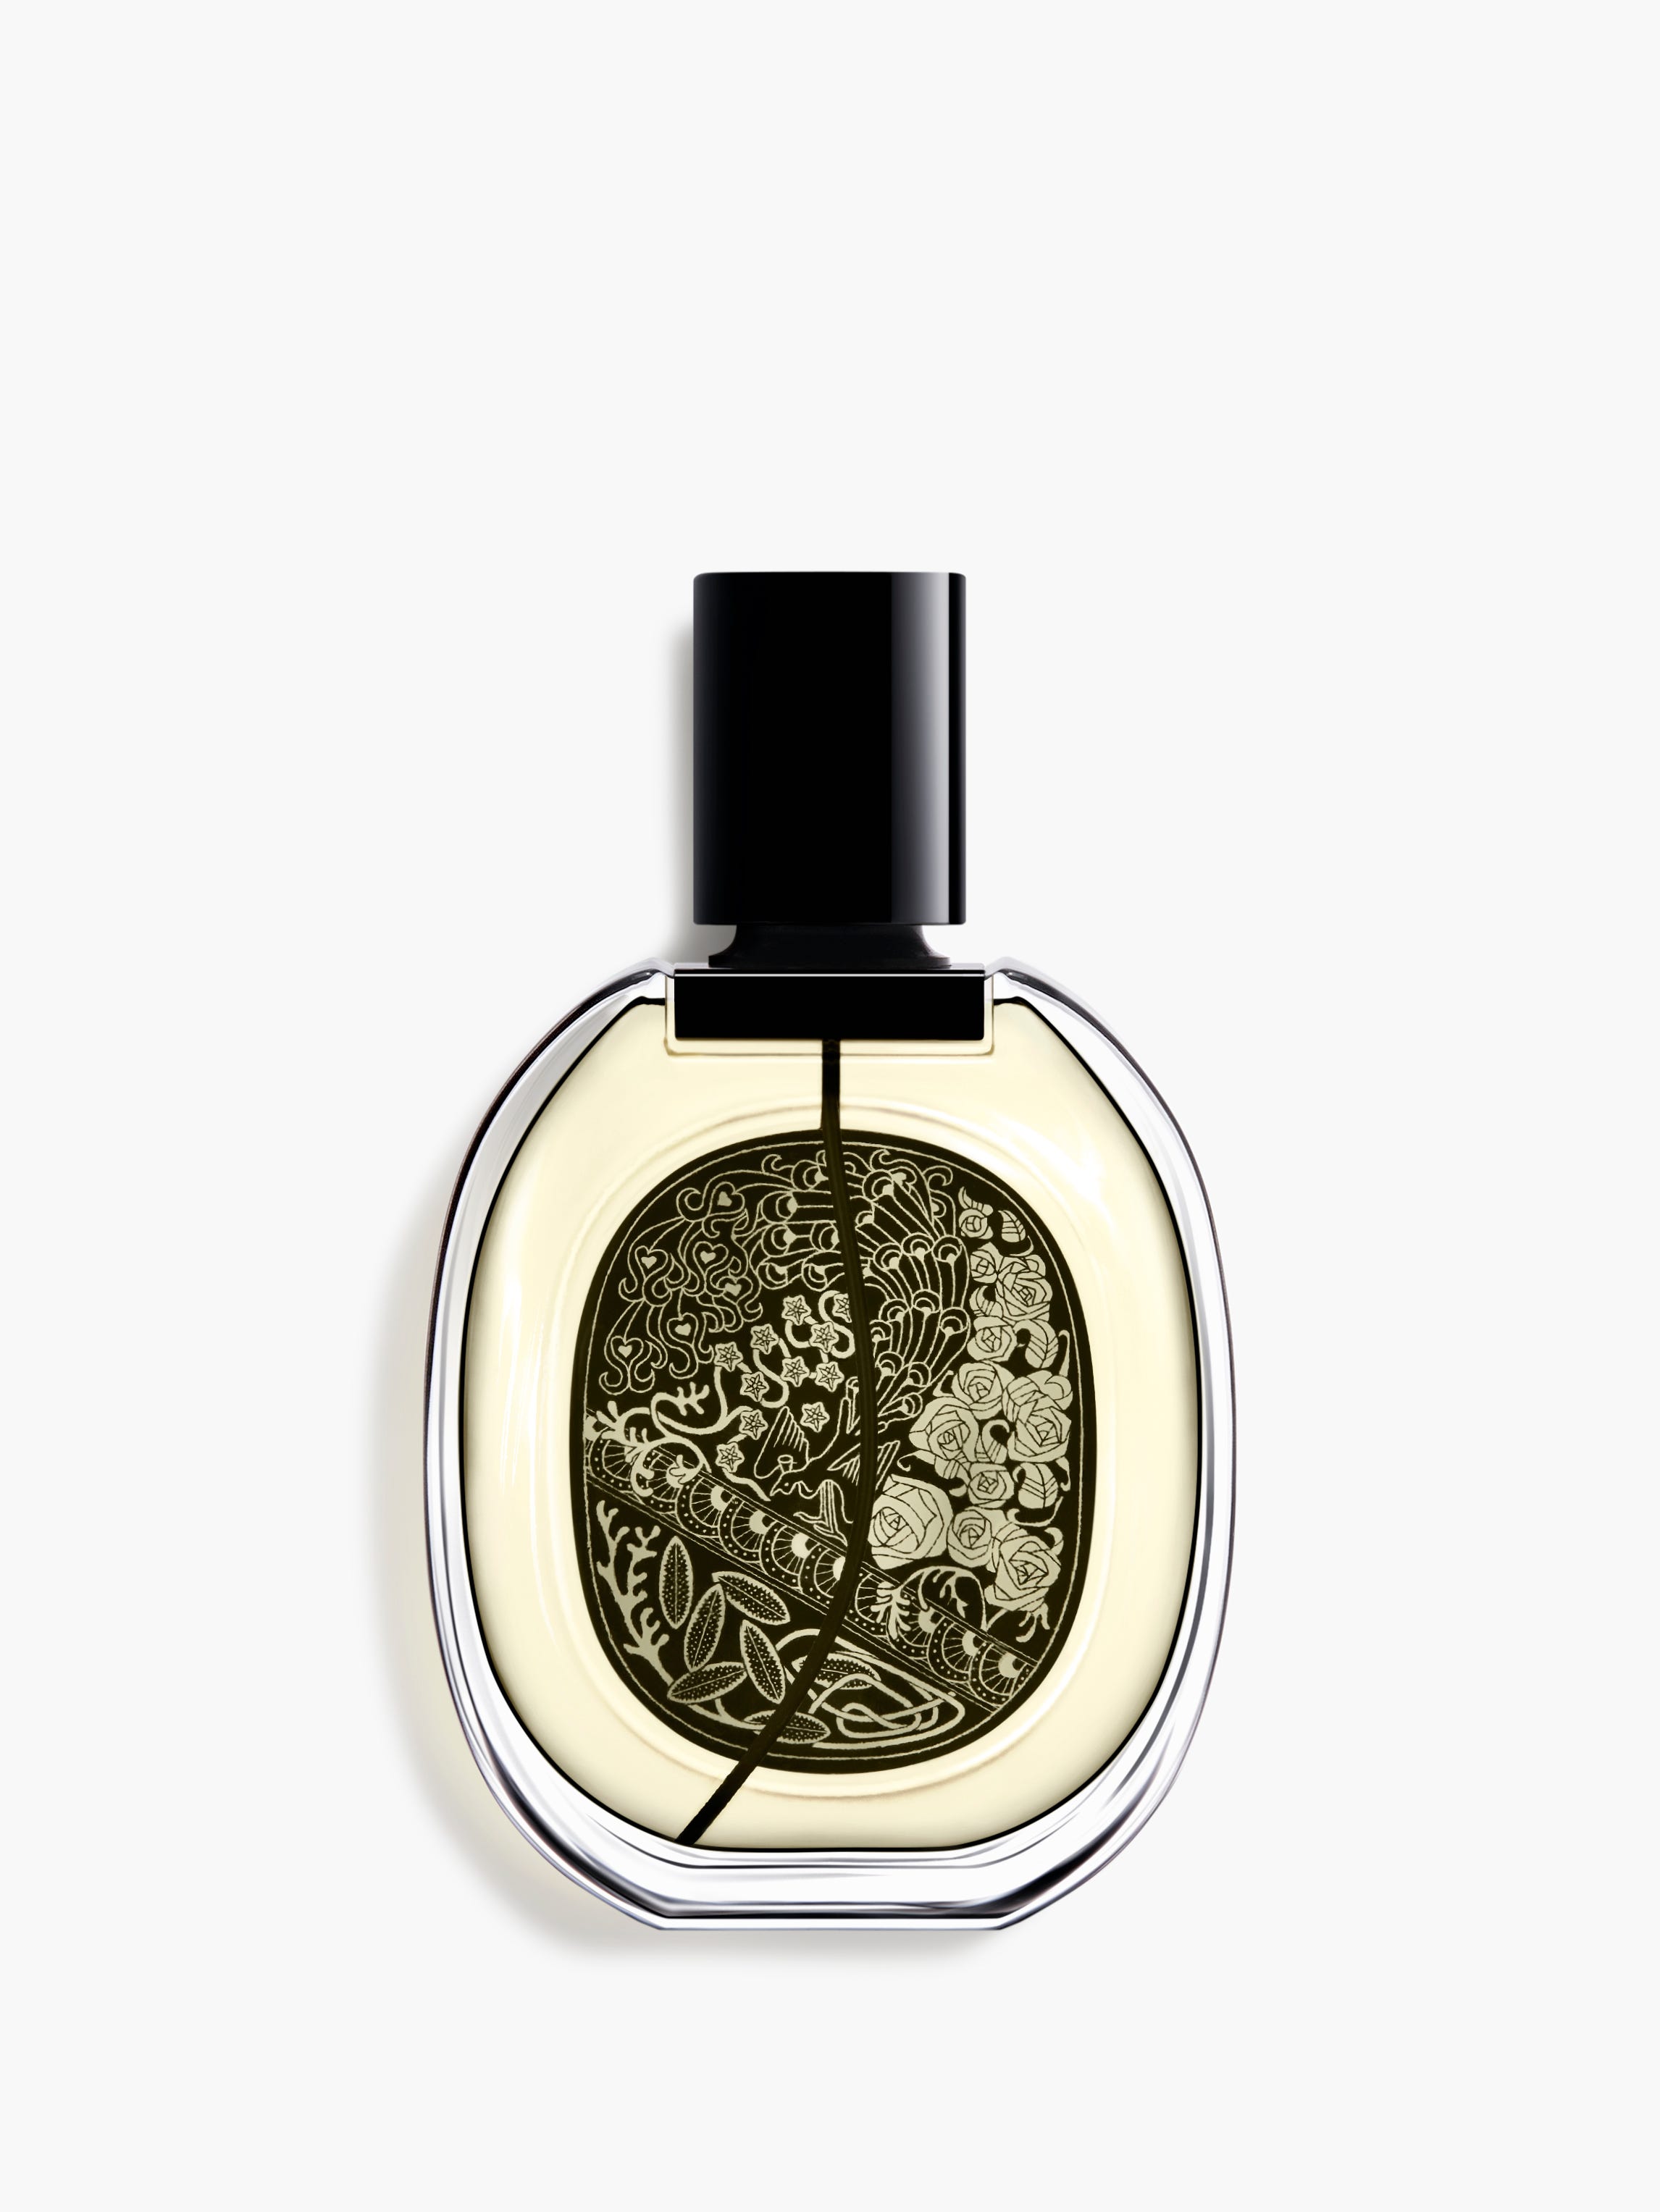 Eau Capitale - Eau de parfum 75ml | Diptyque Paris